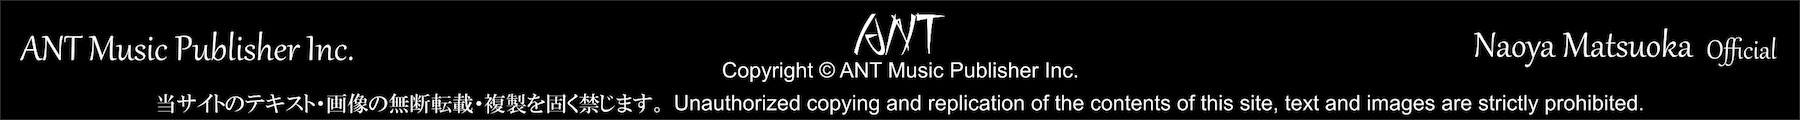 ANT Music PubLiher Inc.